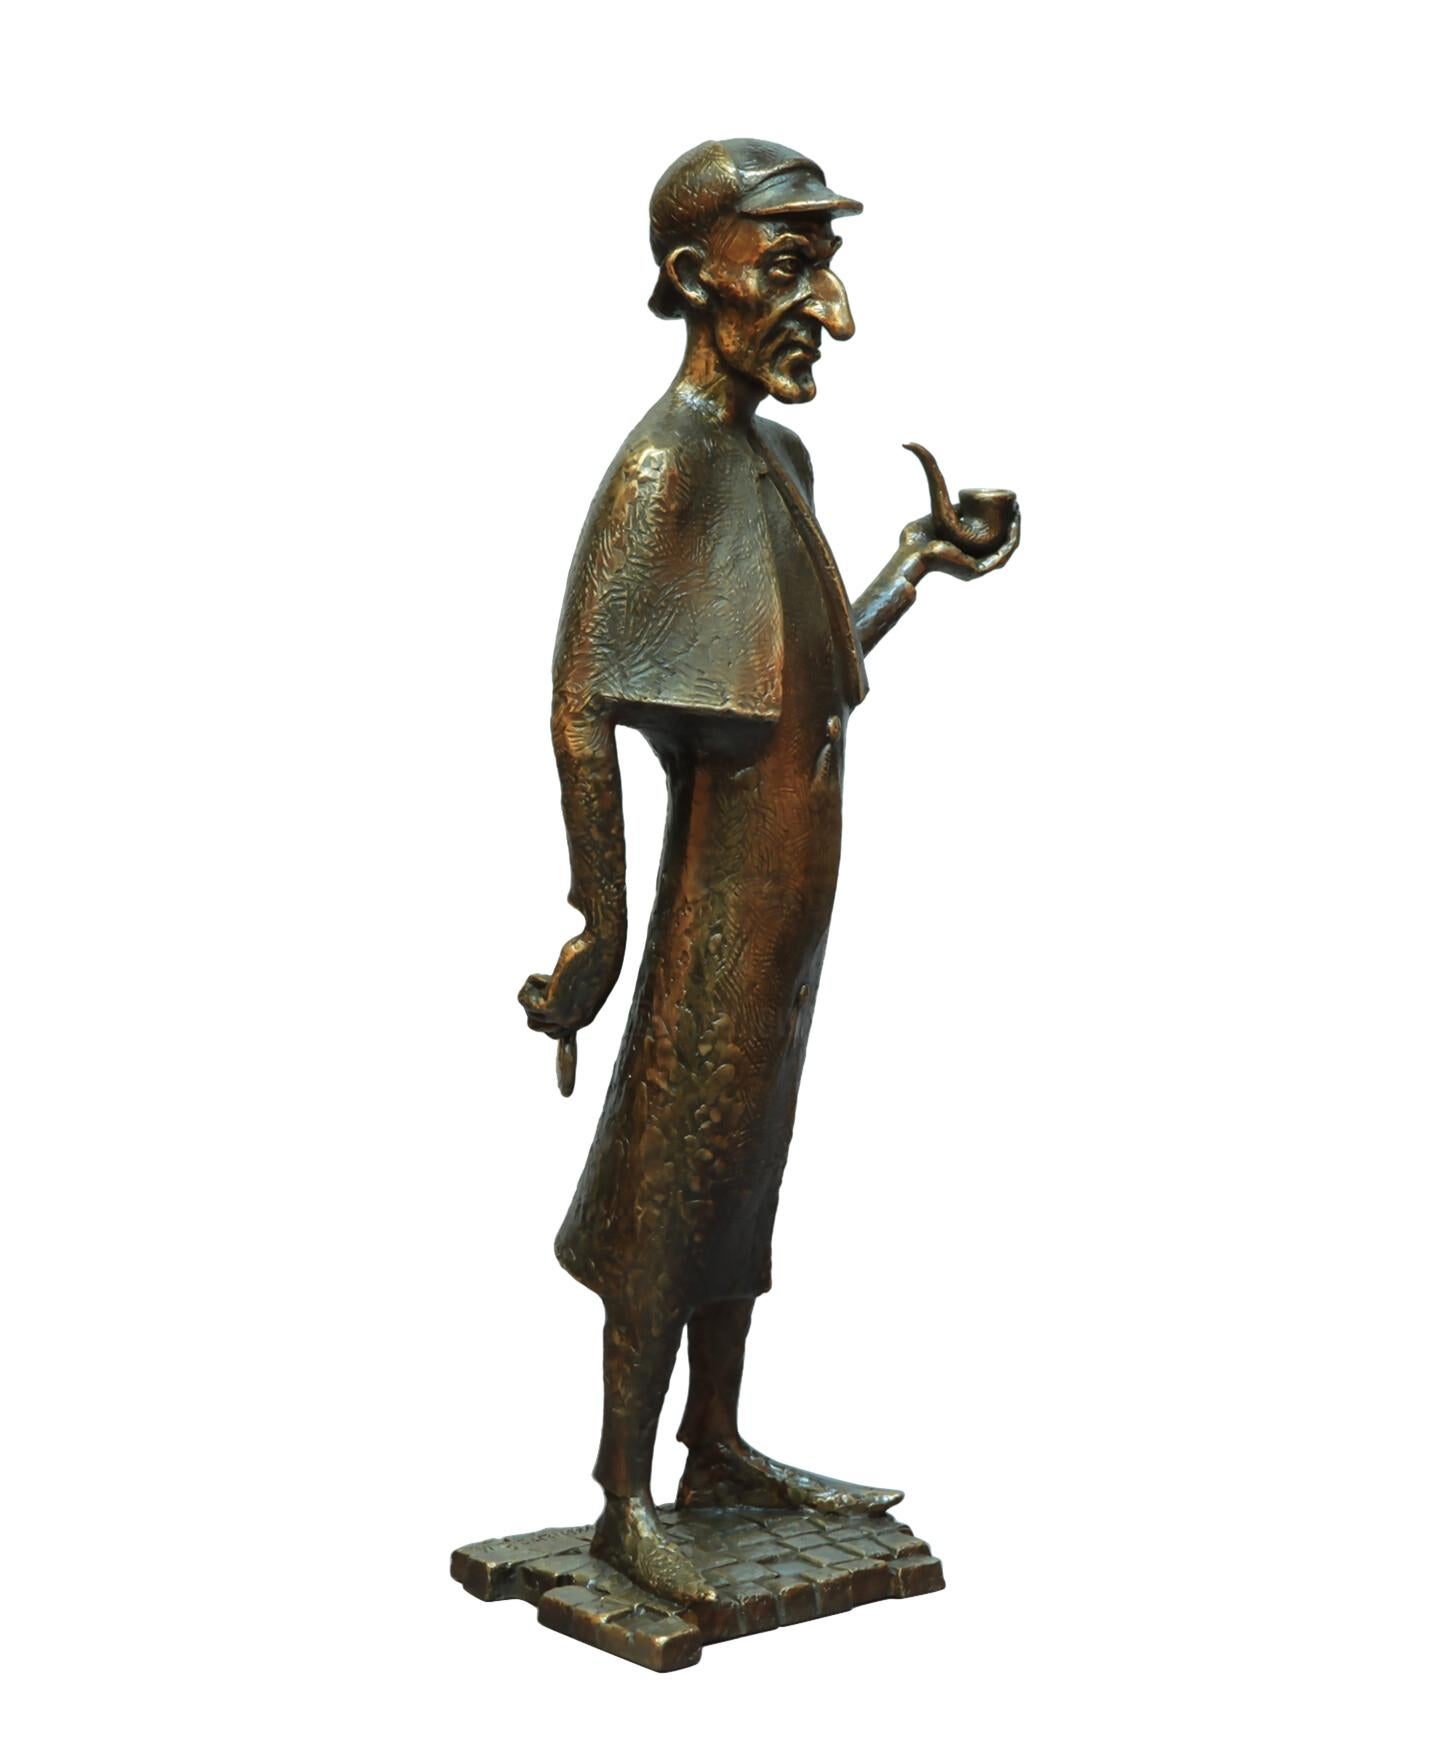 Volodymyr MYKYTENKO Figurative Sculpture - Sherlock, Bronze Sculpture by Volodymyr Mykytenko, 2021